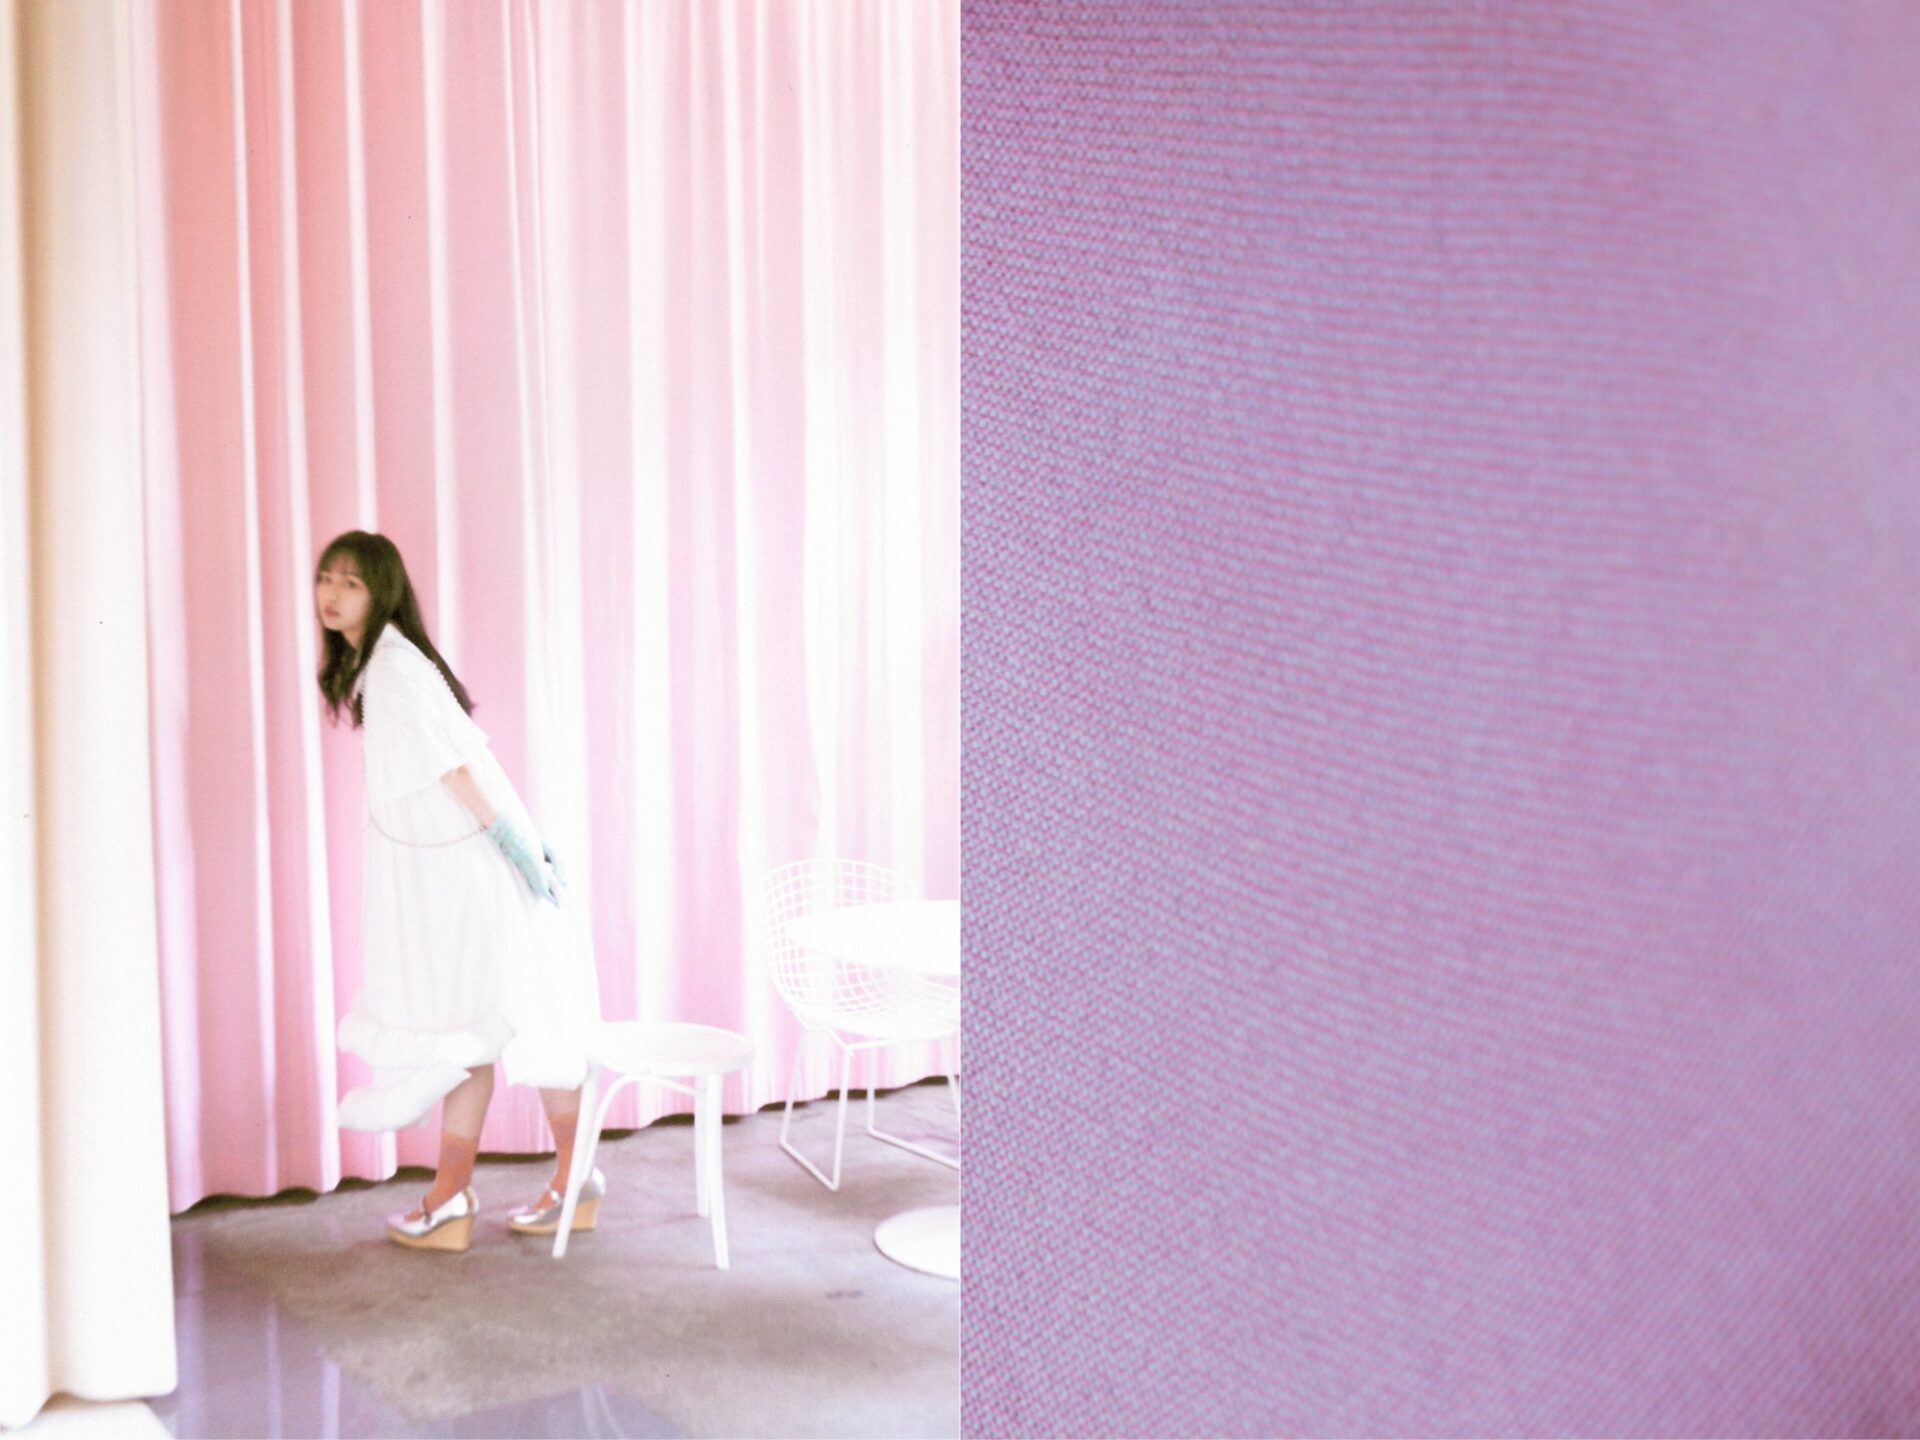 武井宏員撮影の君と歩く1キロメートル 紫の布のアップ